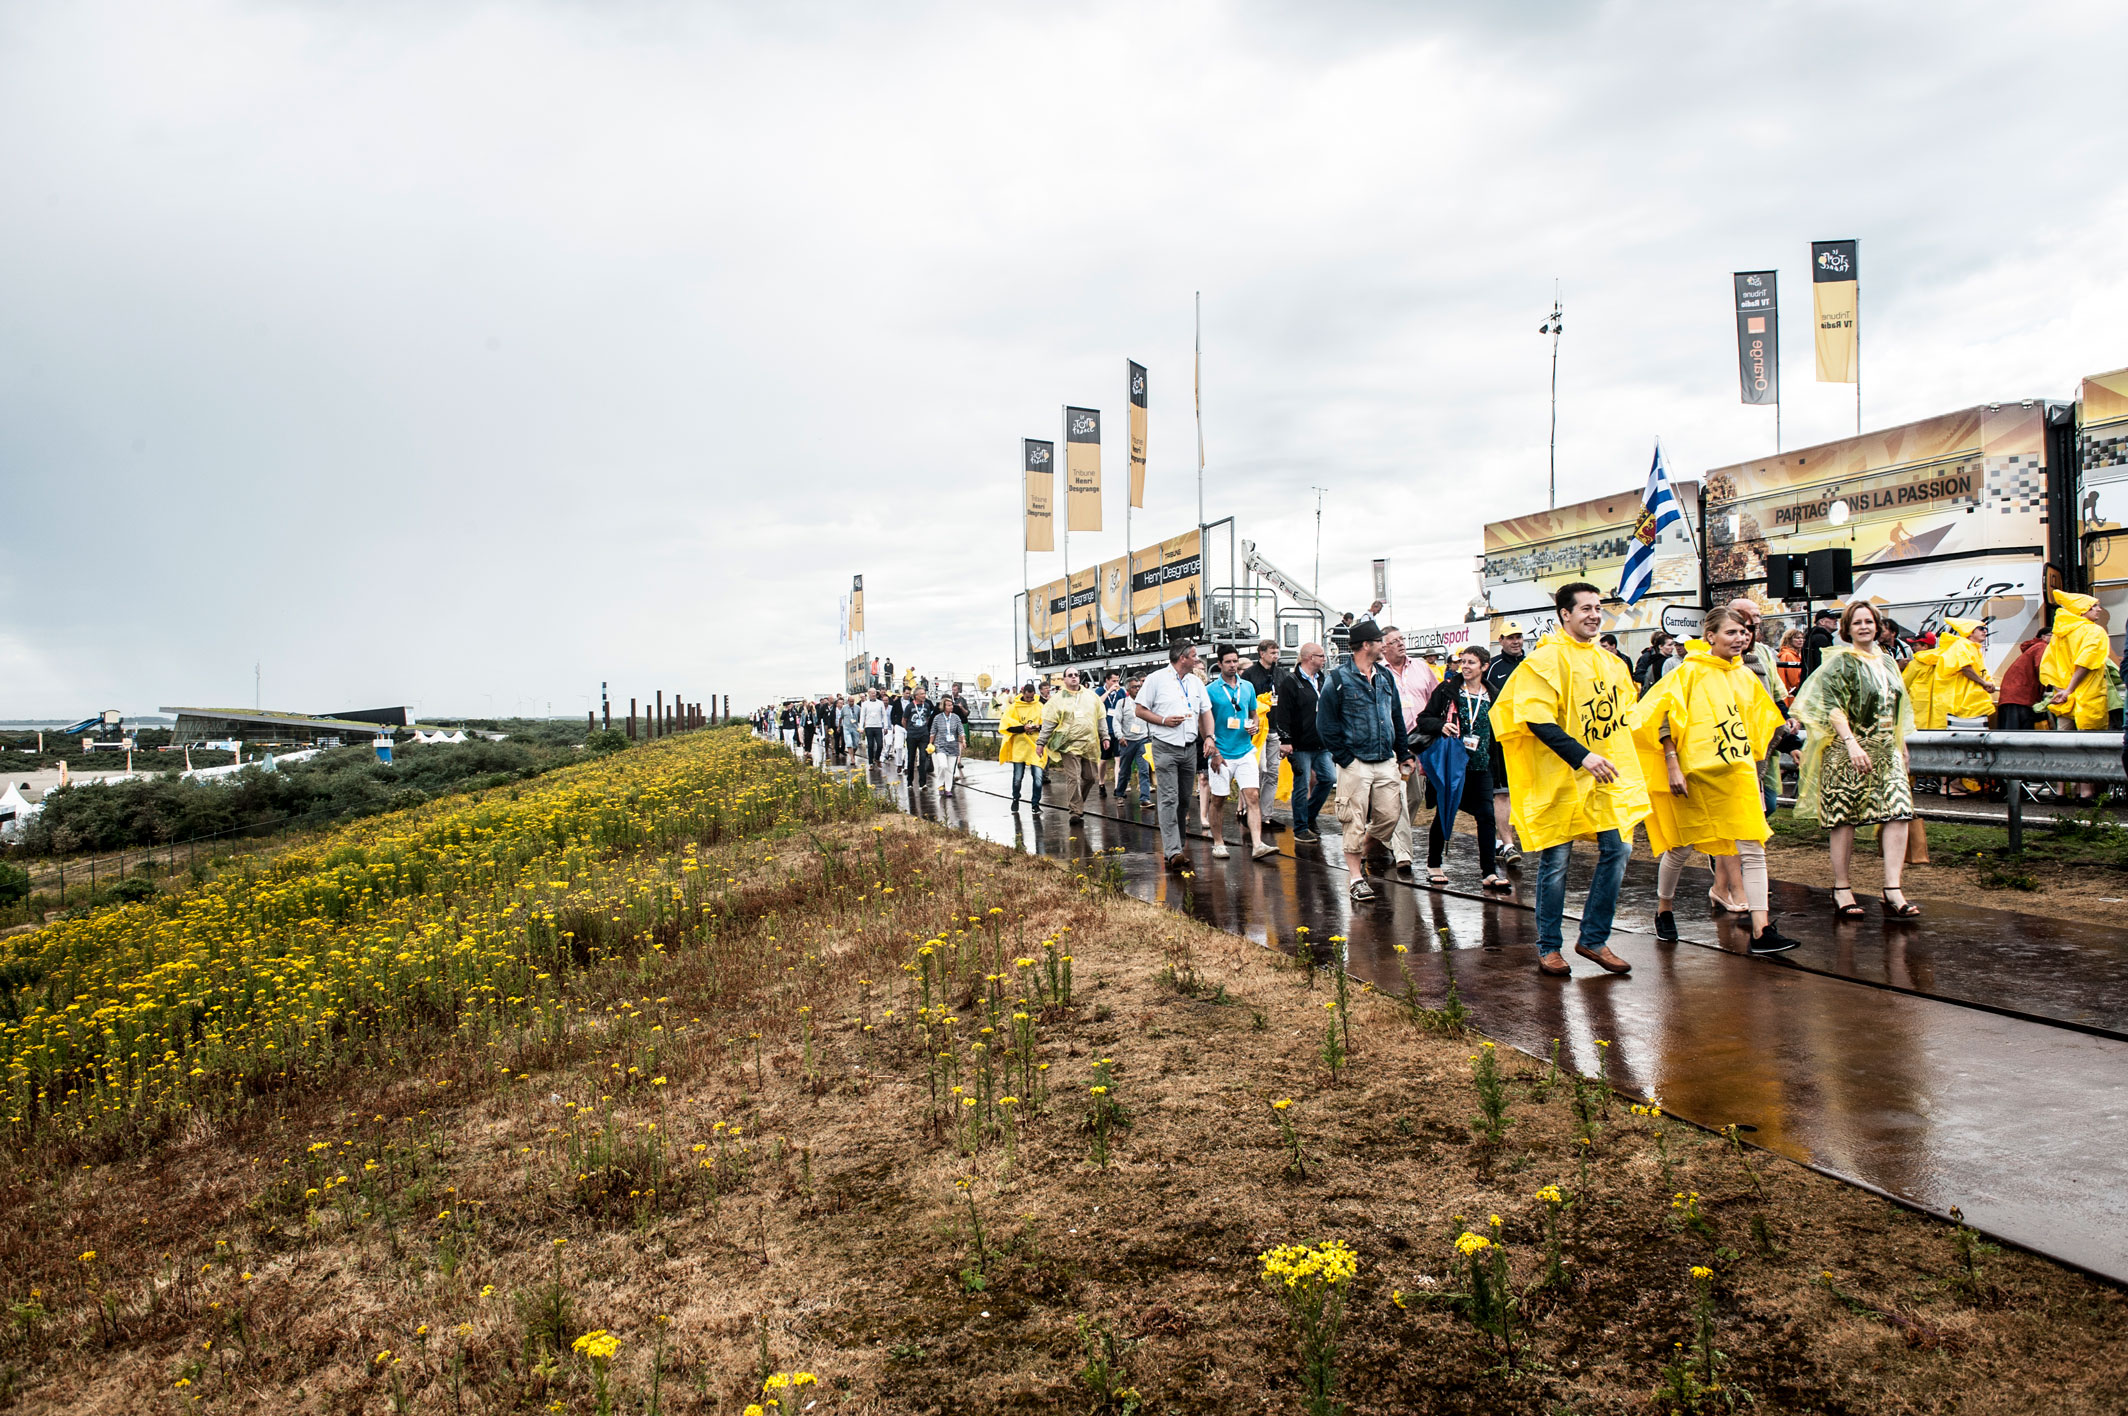 Toeschouwers van de Tour de France lopen op de Oosterscheldekering in een gele poncho in de regen